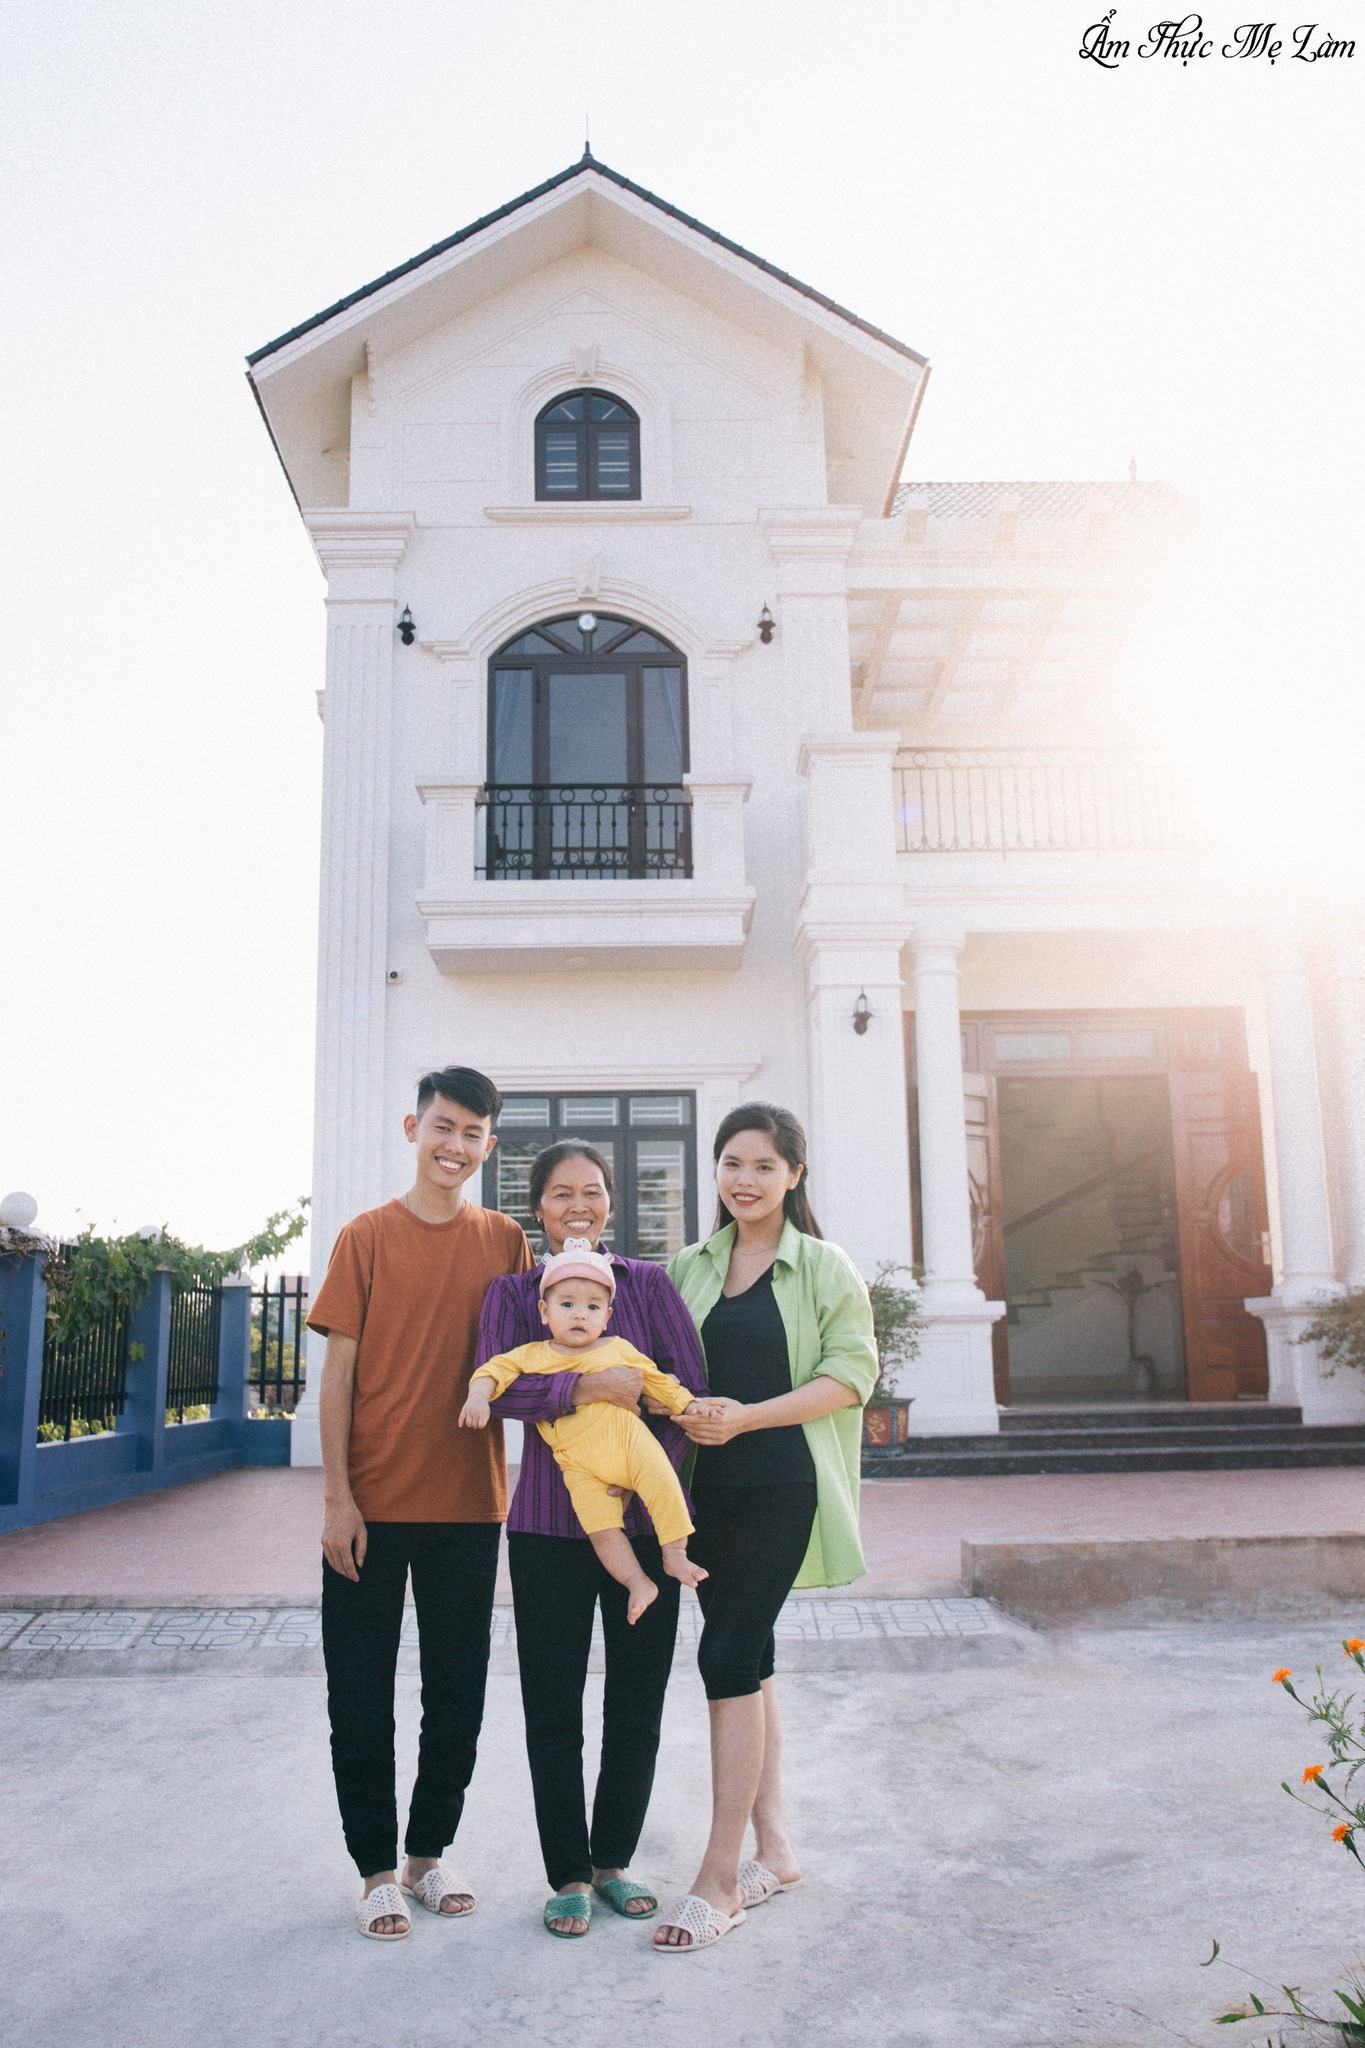 Đồng Văn Hùng “Ẩm thực mẹ làm” xây nhà 3 tỷ tặng mẹ tuổi 24  - Ảnh 6.